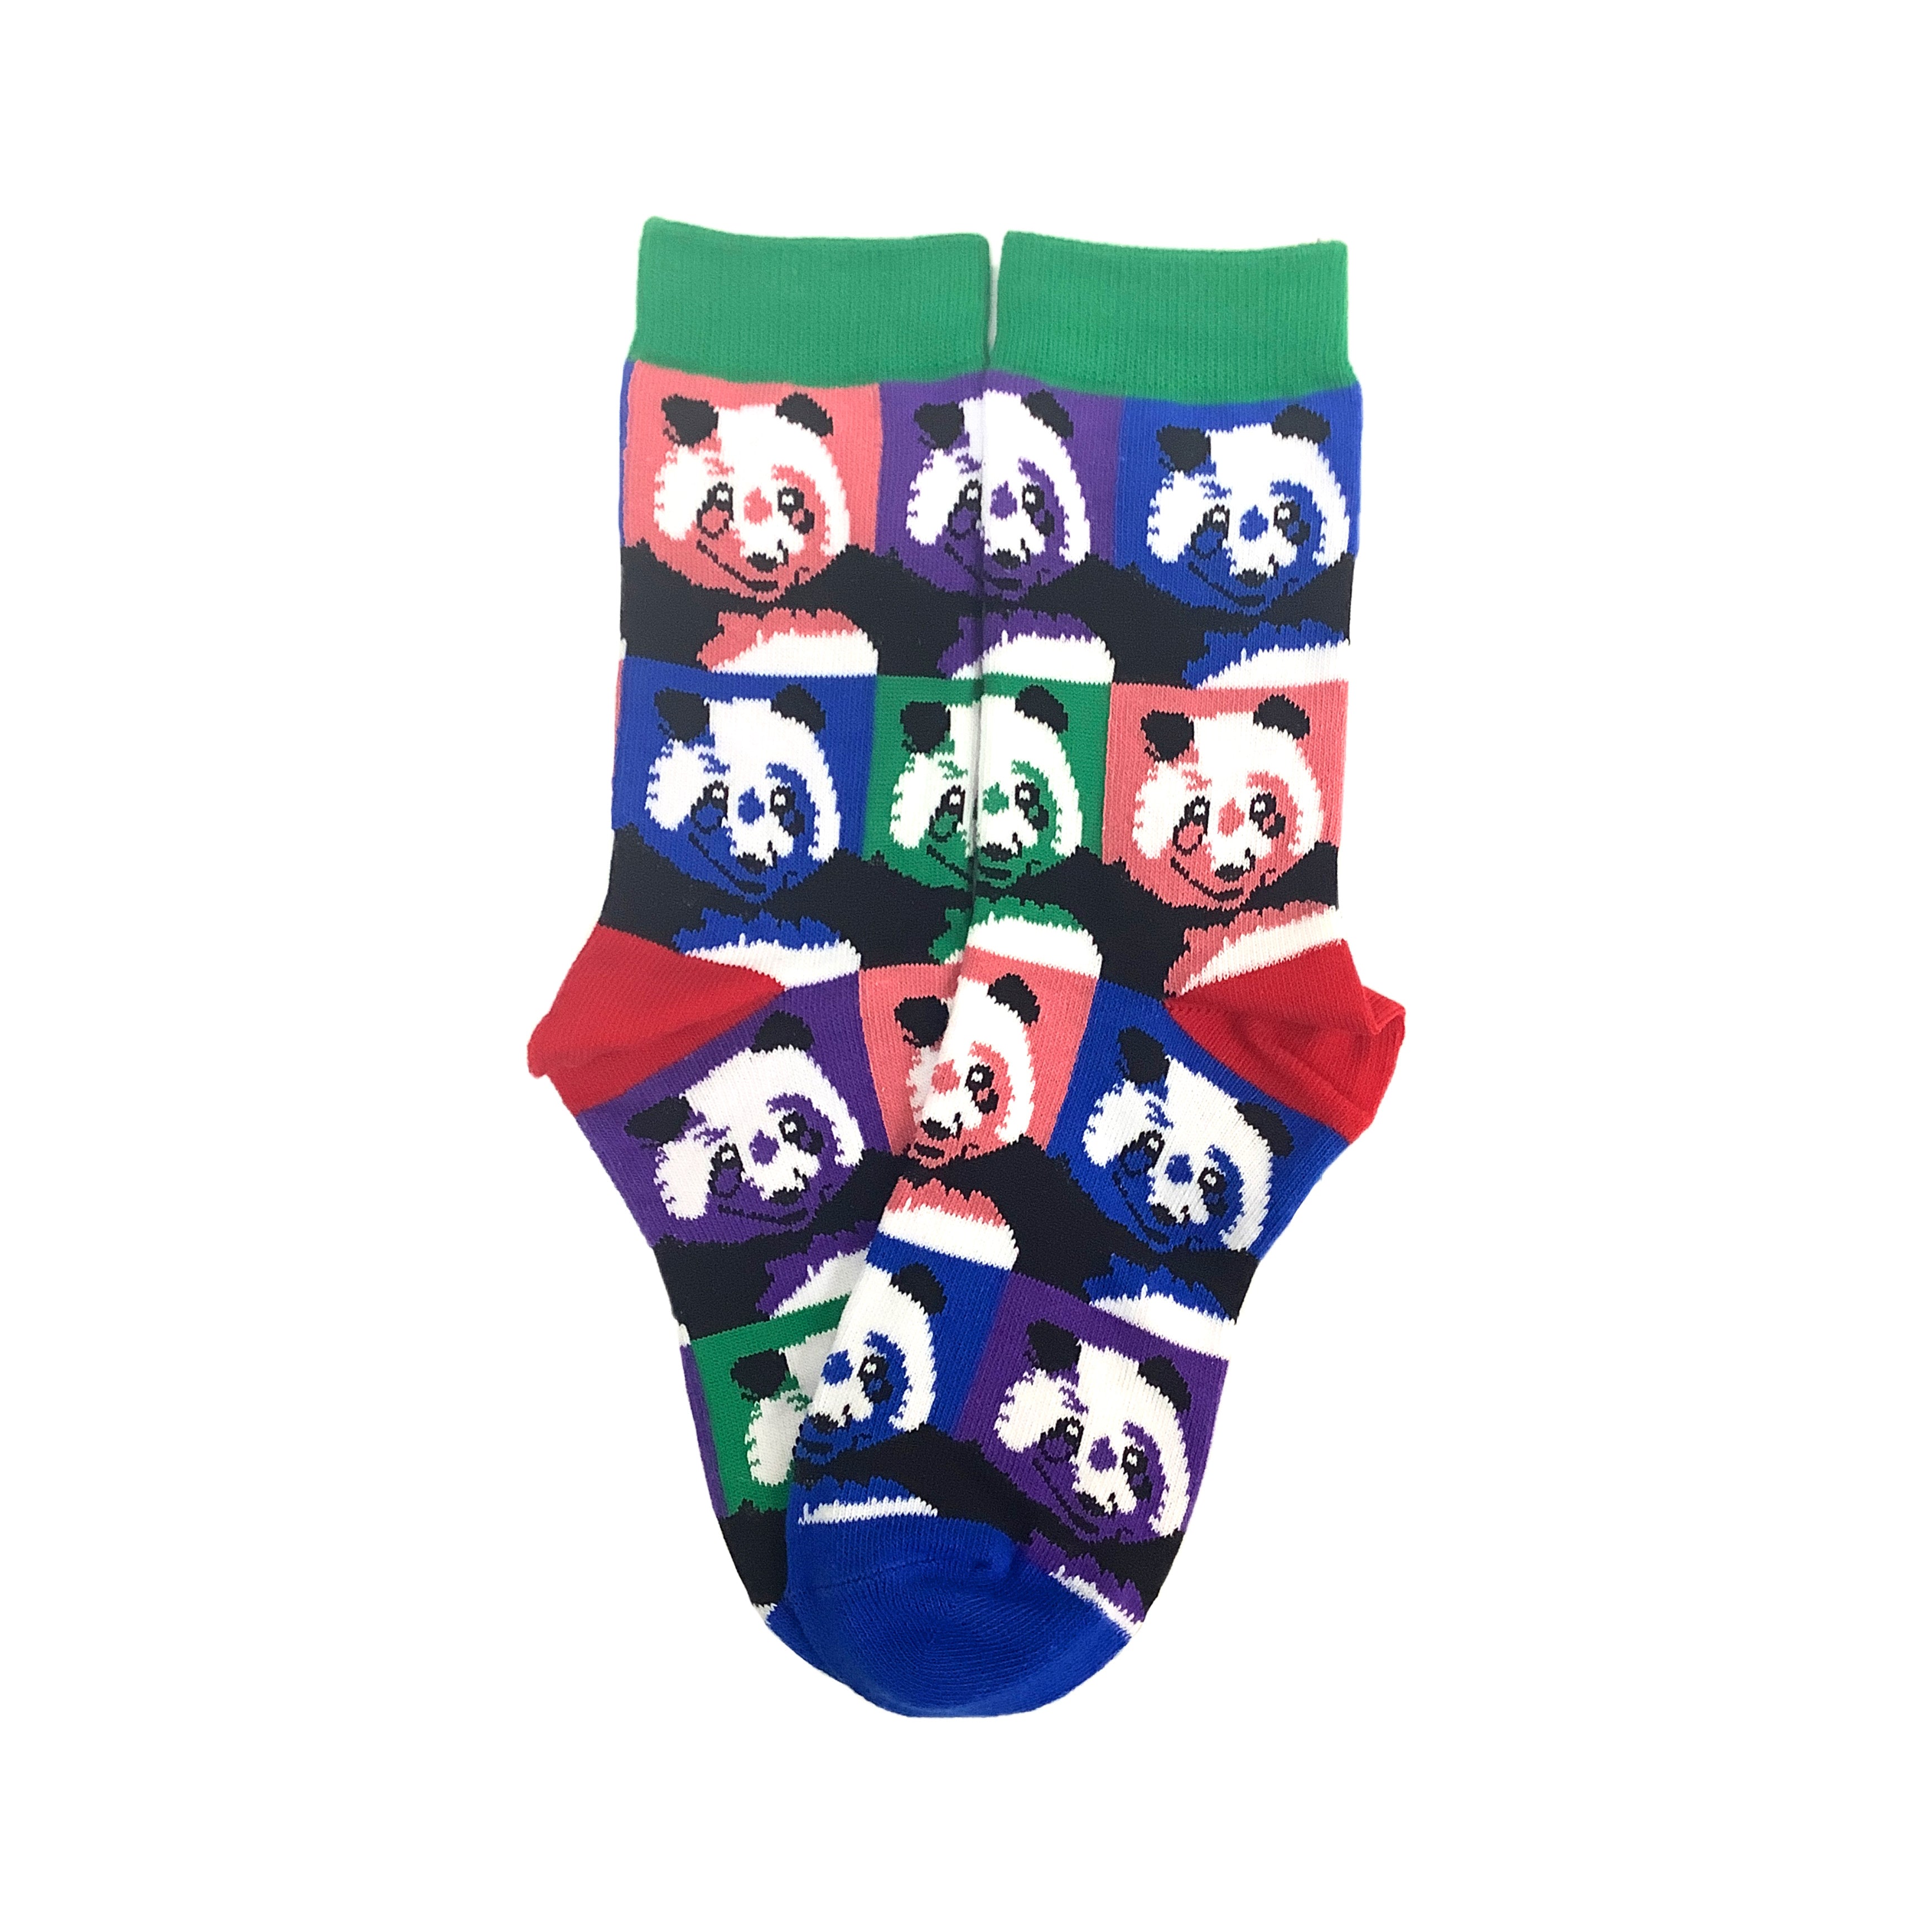 Pop Art Panda Pattern Socks from the Sock Panda